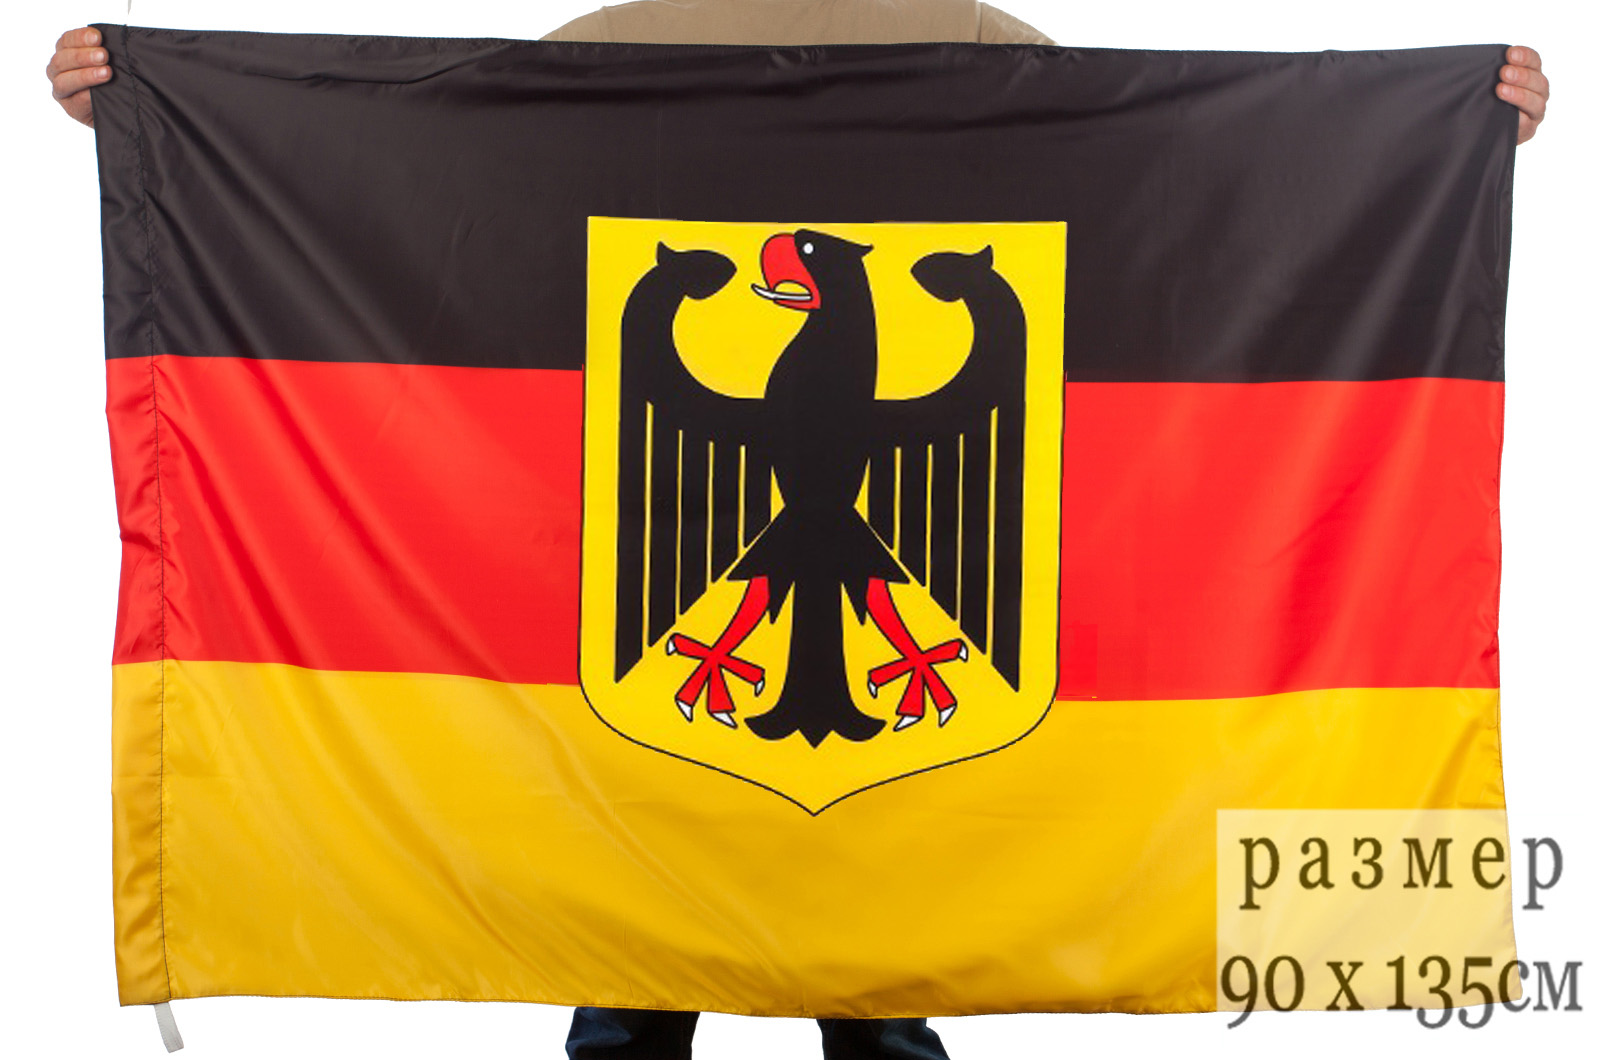 Купить в германии с доставкой в россию. Флаг ФРГ С гербом. Флаг Германии 90х135. Флаг Германии с гербом 90х135. Флаг Германии герб.